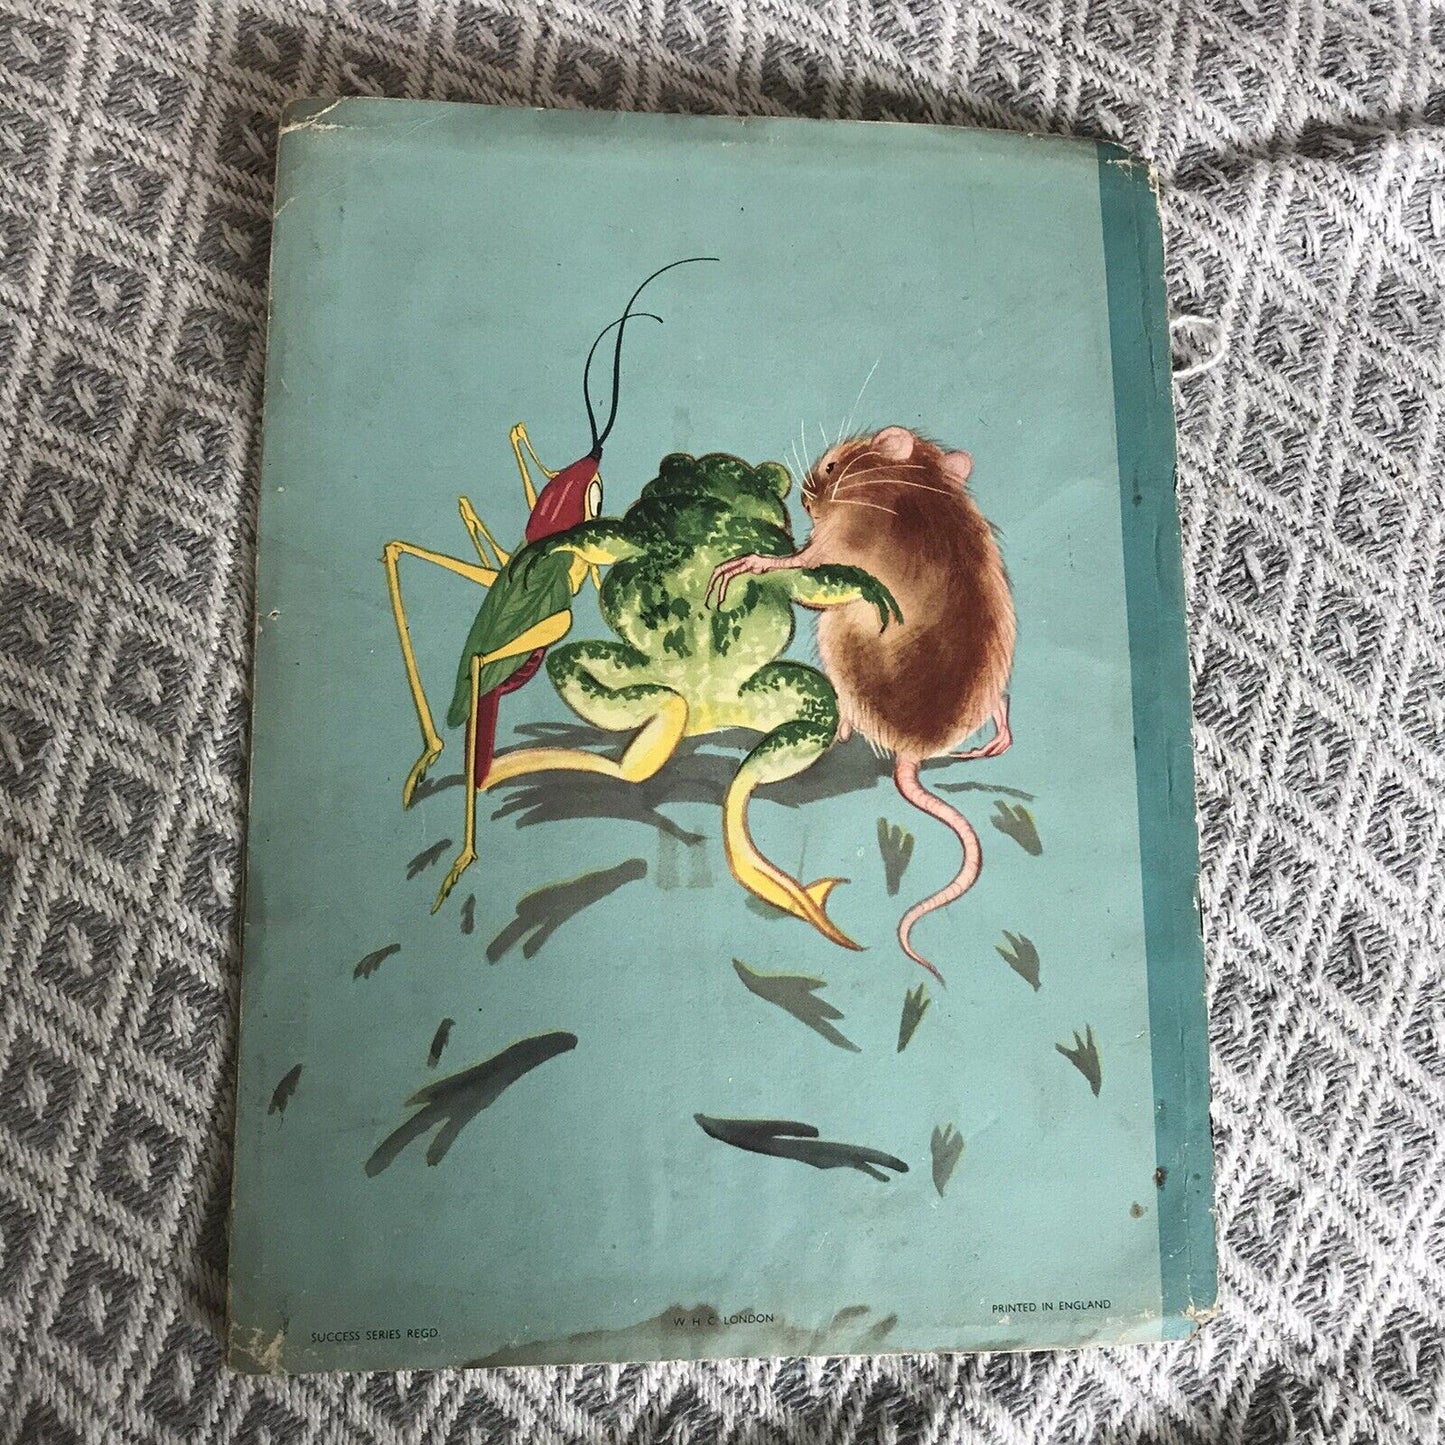 1945*1st*Goggle The Frog - Mary B. Brooks (W. H. Cornelius Publisher) Honeyburn Books (UK)